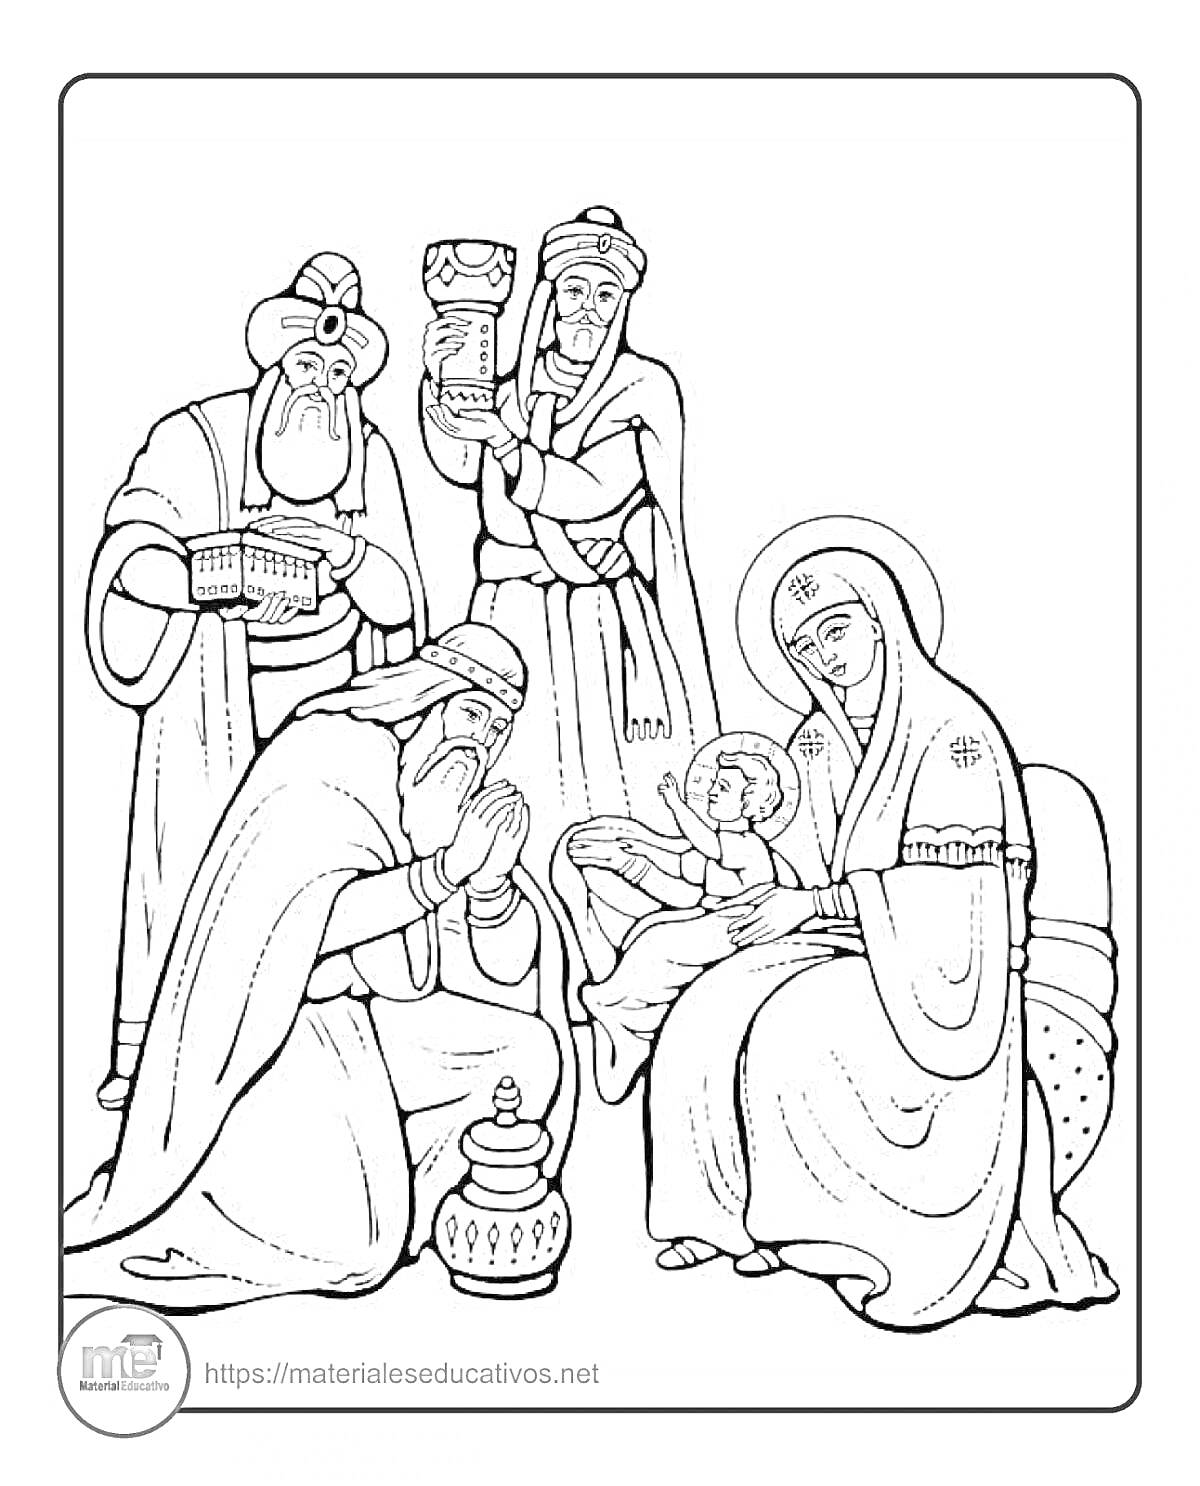  Поклонение волхвов: Мария с младенцем, три волхва с дарами